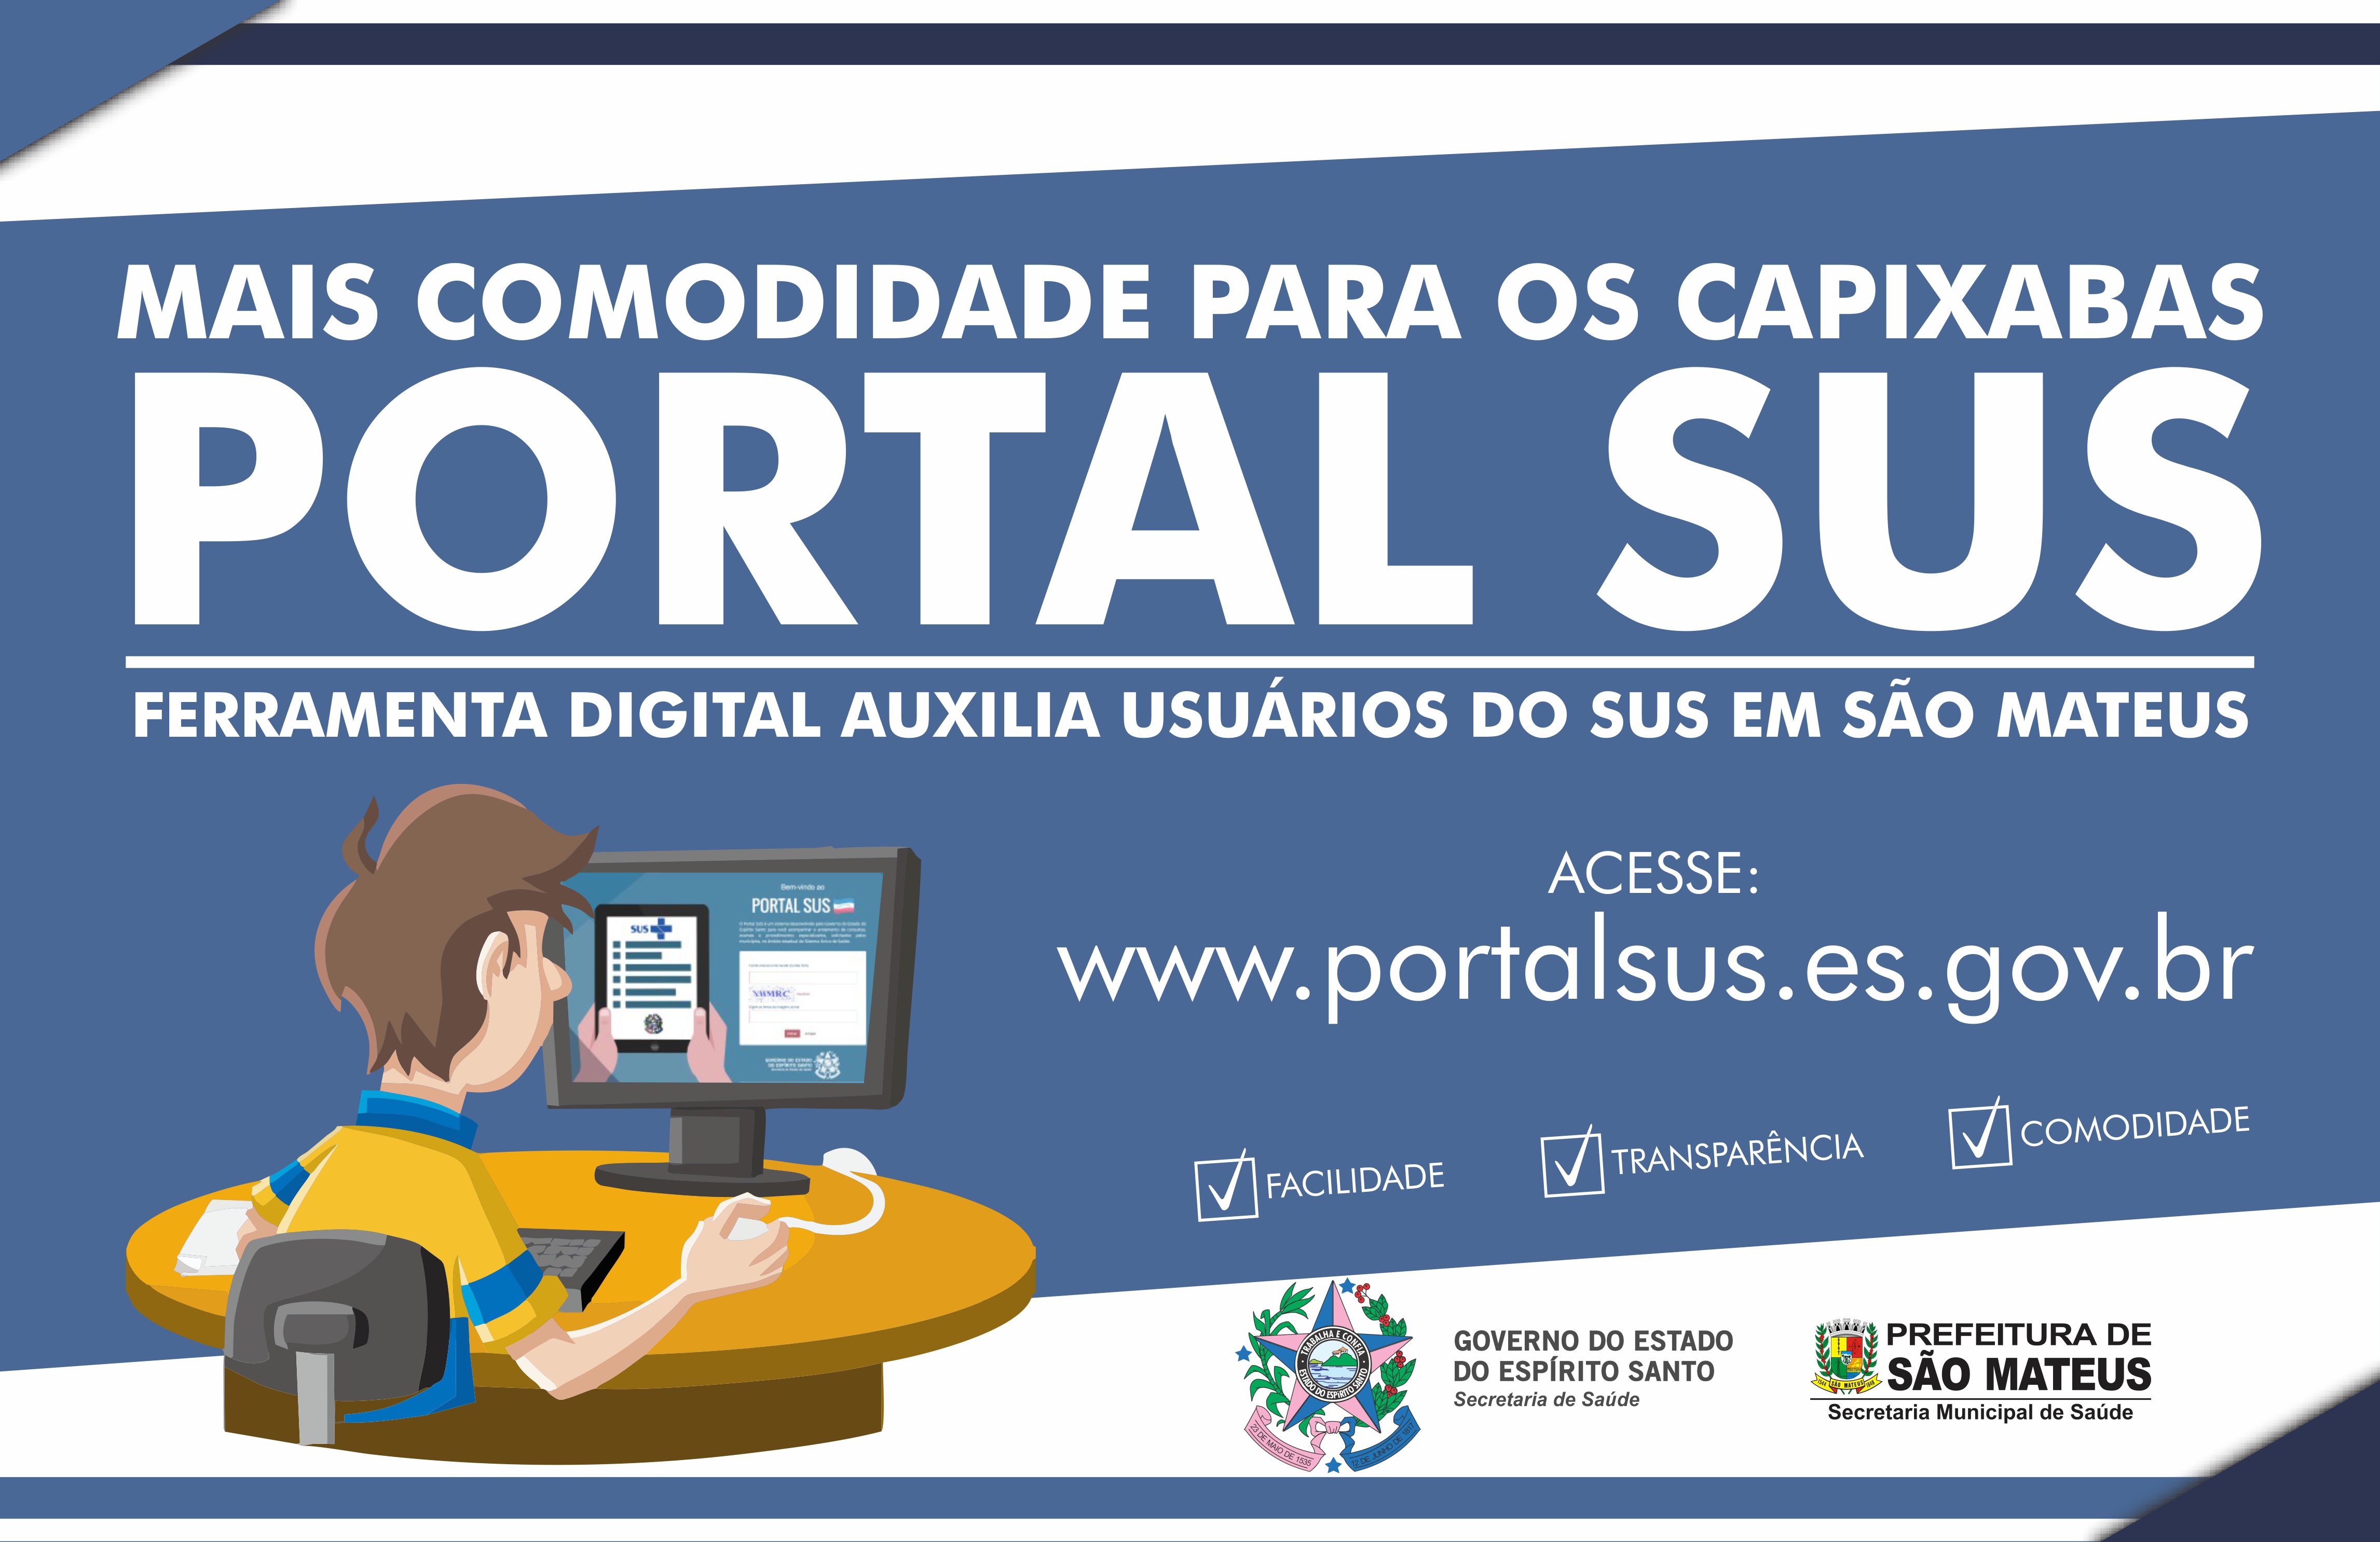 Ferramenta digital auxilia usuários do SUS em São Mateus